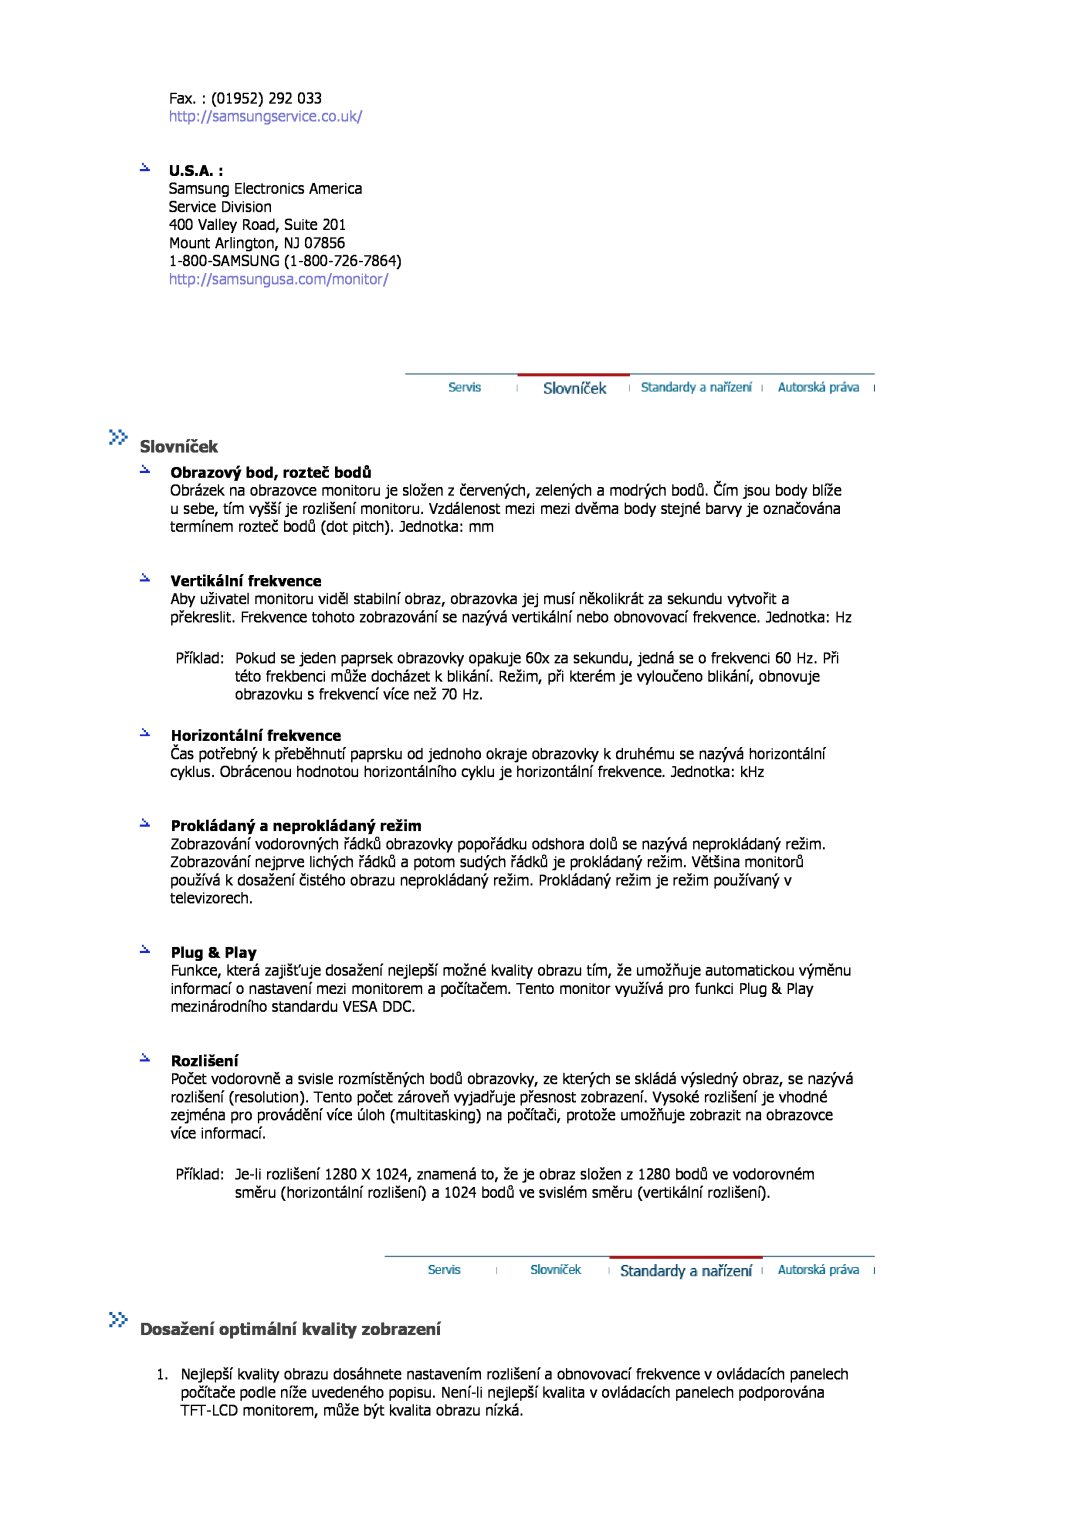 Samsung MJ17ASAS/EDC manual Slovníček, Dosažení optimální kvality zobrazení, http//samsungservice.co.uk, U.S.A, Plug & Play 